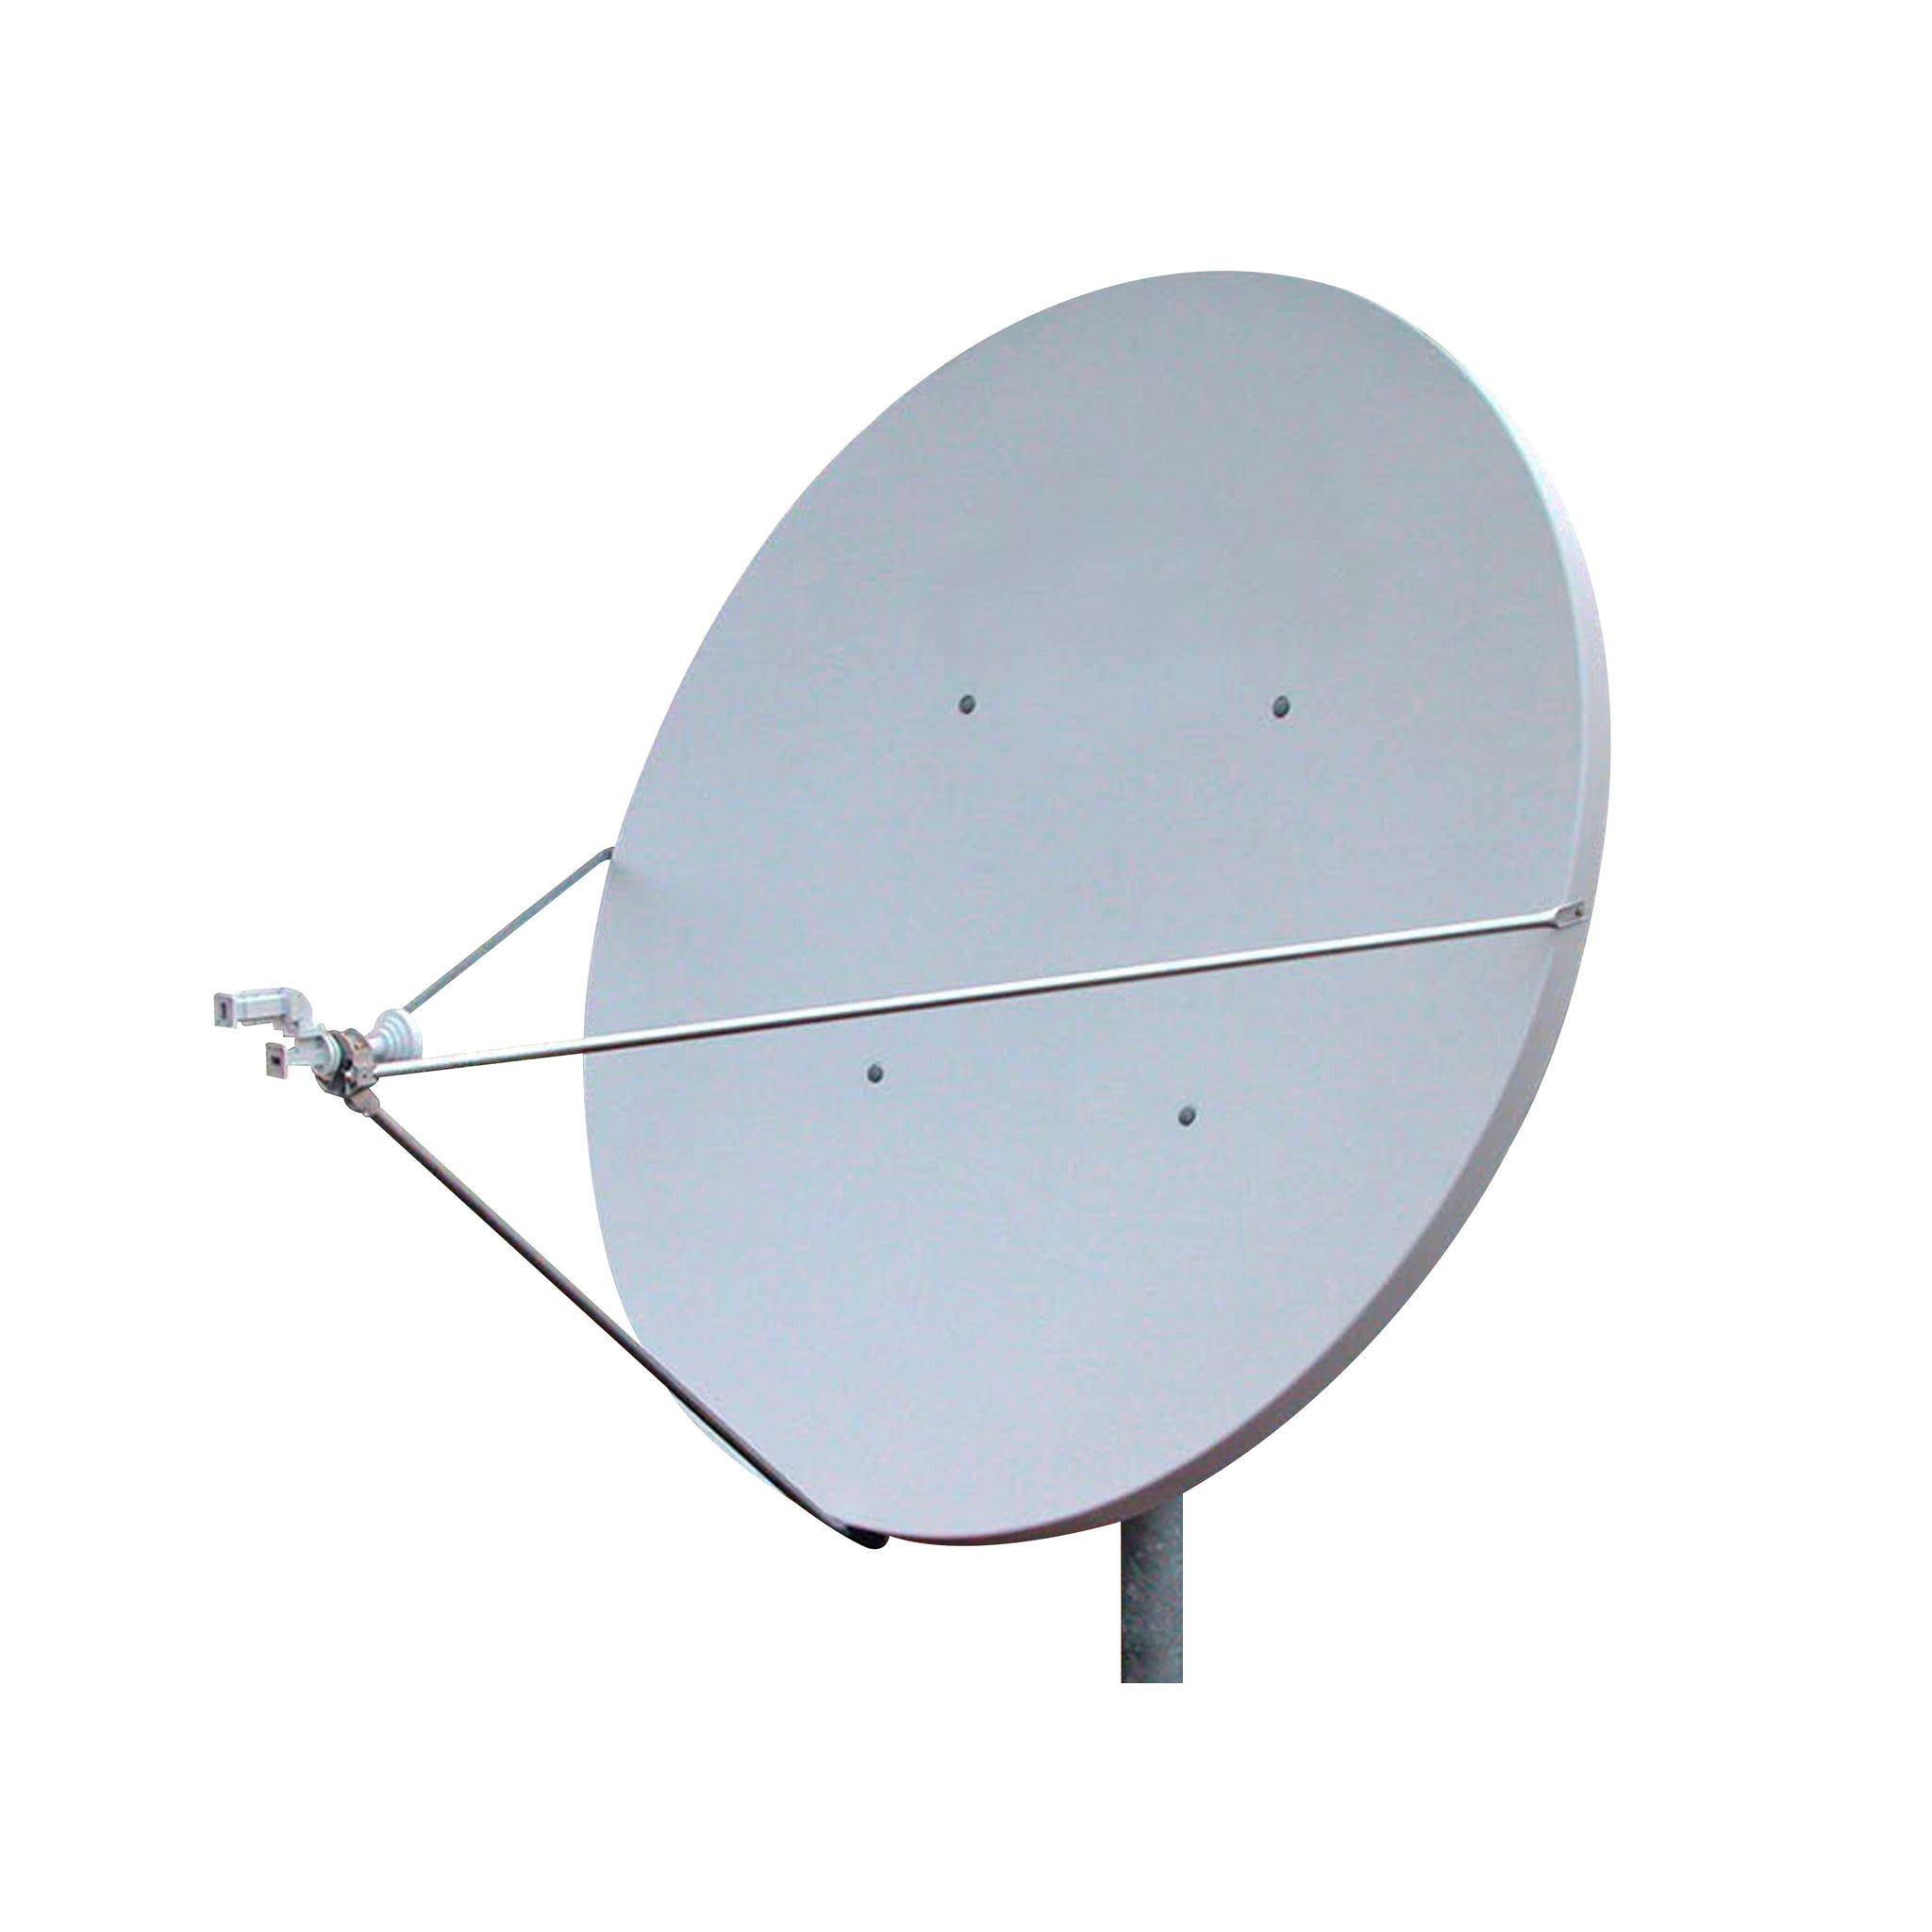 1.8m SFL Receiver Transmitter (RxTx) Antenna